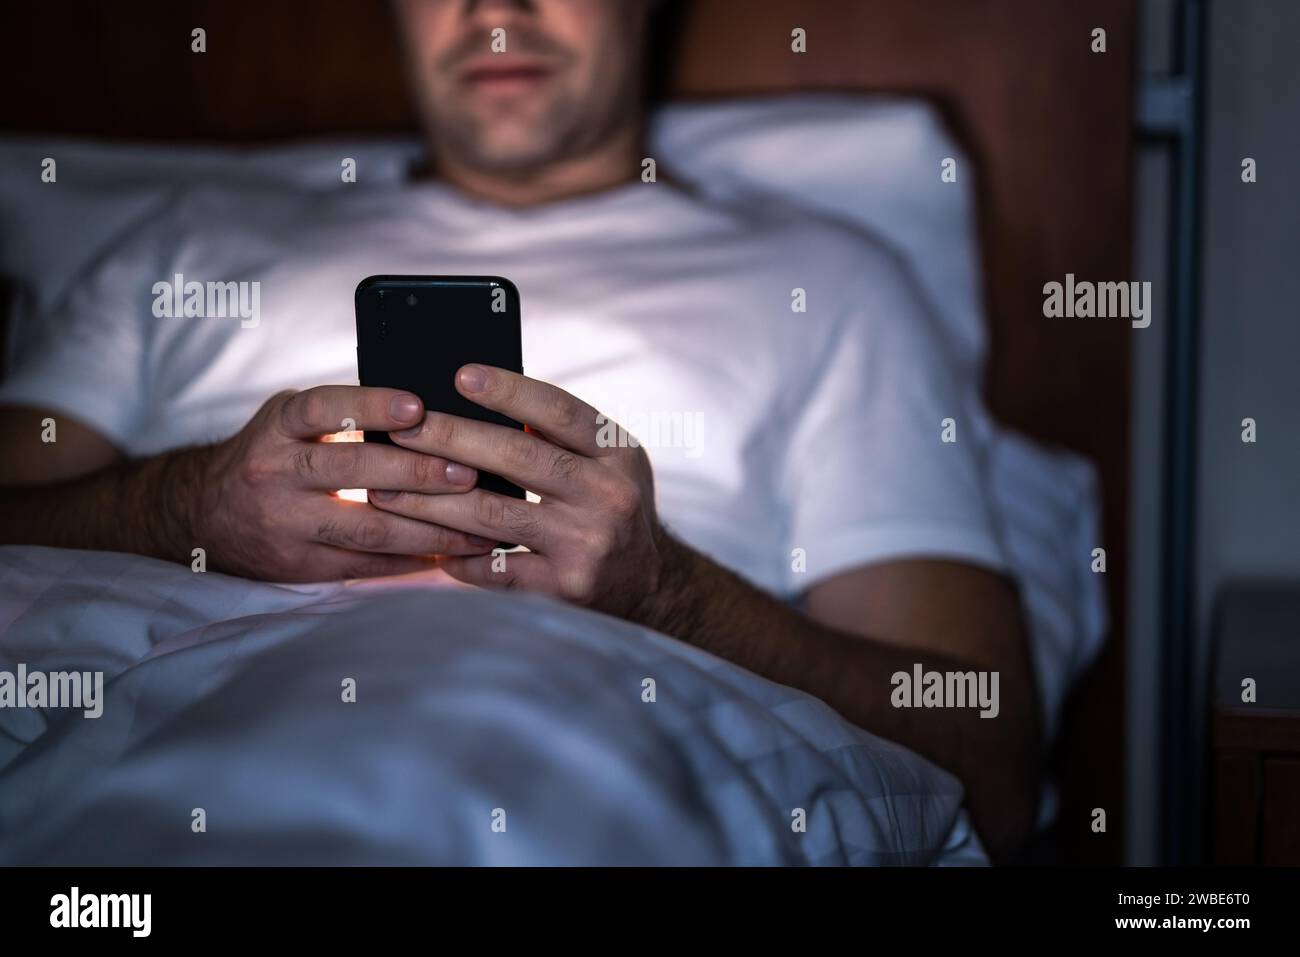 Telefon nachts im Bett. Mann mit Smartphone, bevor er schläft. Geheime SMS schreiben, betrügen oder lange arbeiten. Glücklicher Kerl, der Online-Nachrichten durchsucht. Stockfoto